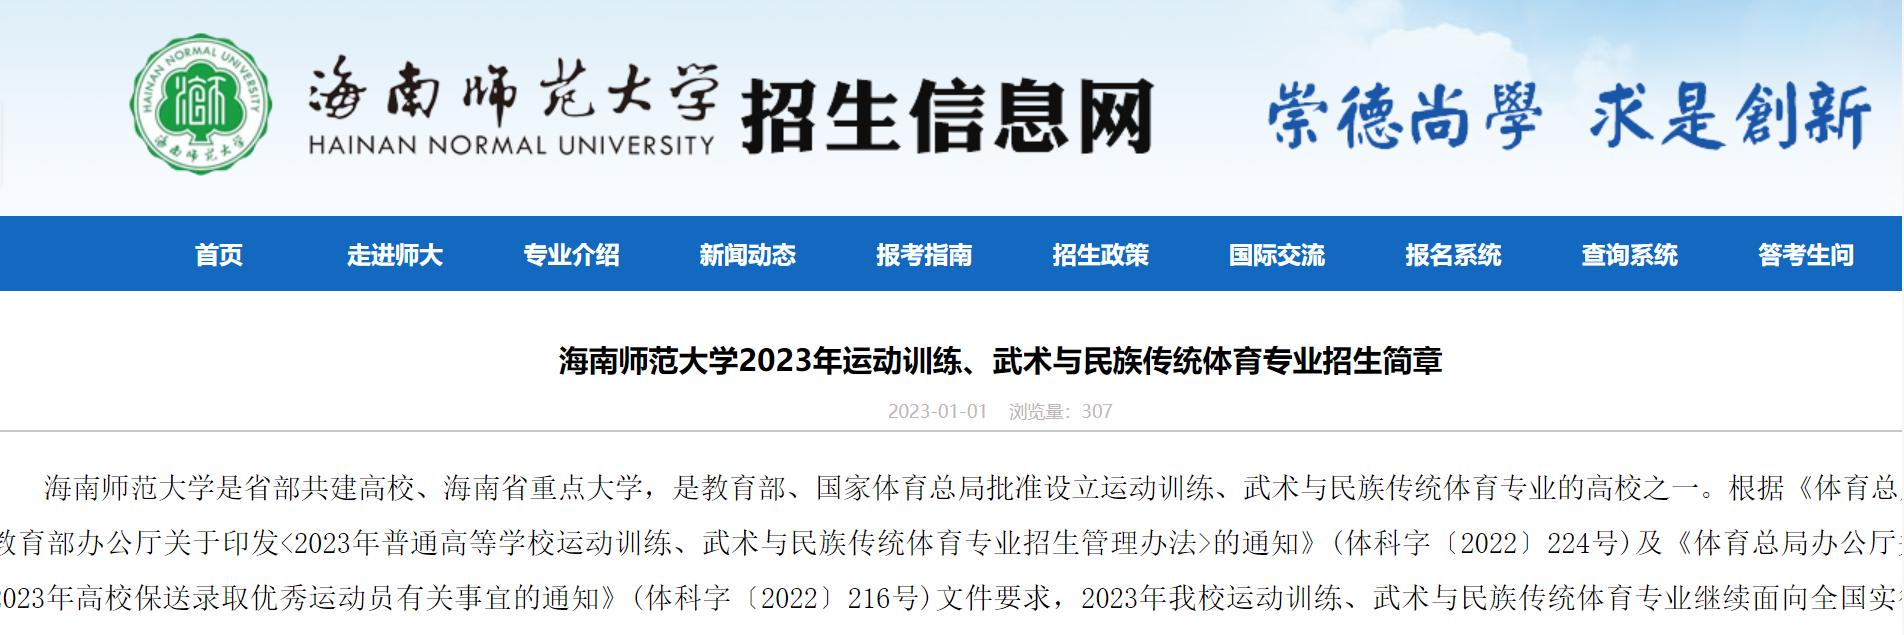 海南师范大学发布2023年运动训练、武术与民族传统体育专业招生简章